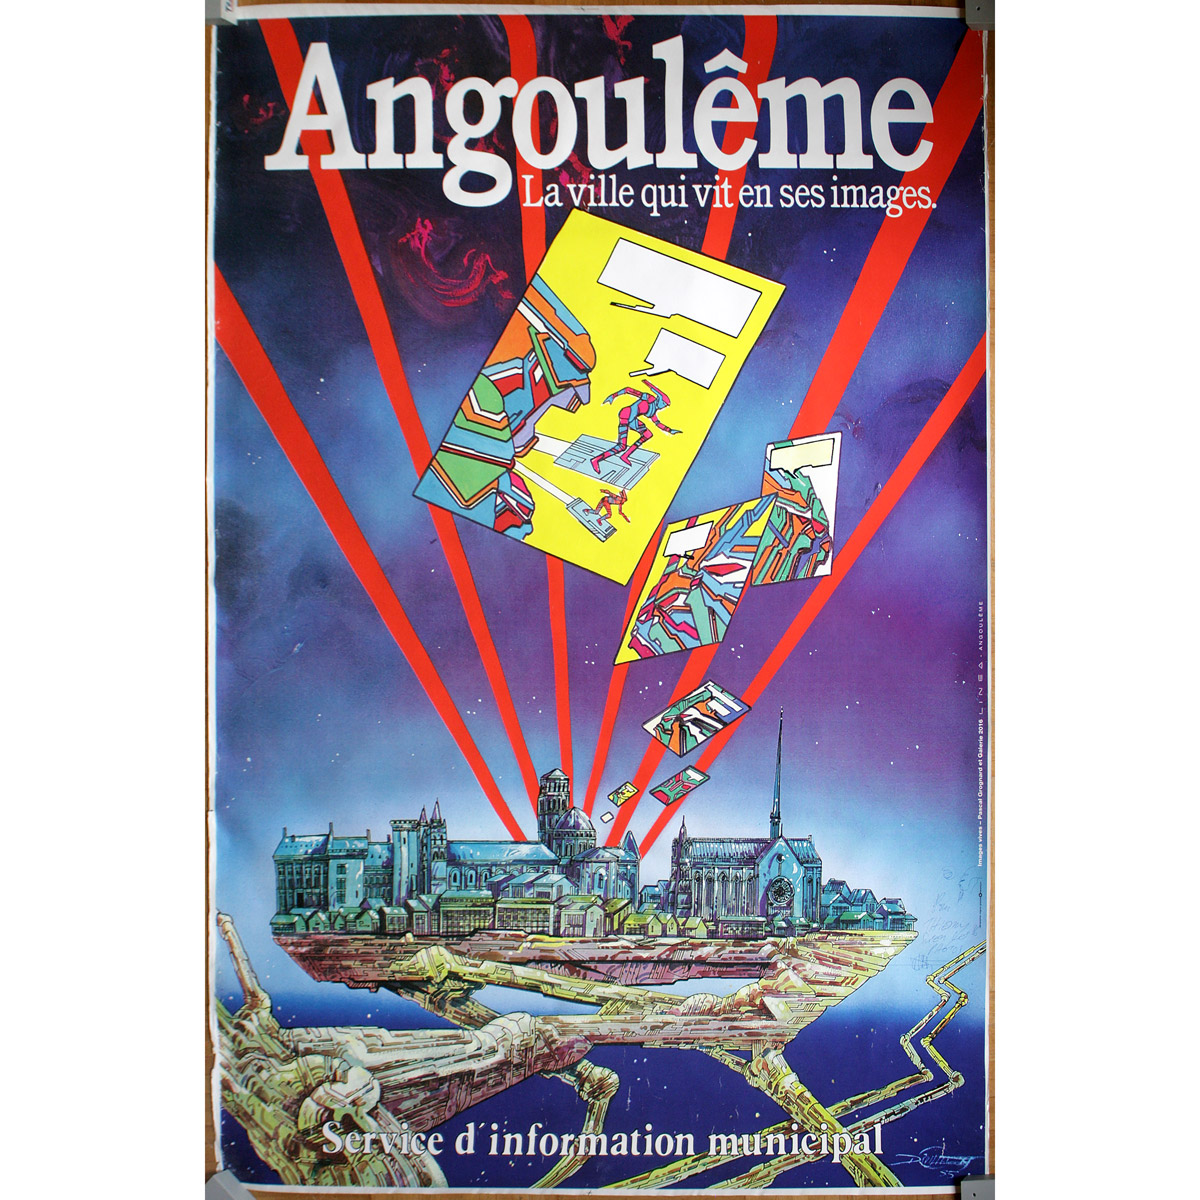 Philippe Druillet • Angoulême – La ville qui vit en ses images • Service d'information municipal – 1985 • Affiche offset • Grand format (120 x 160 cm) • Signée • Neuve